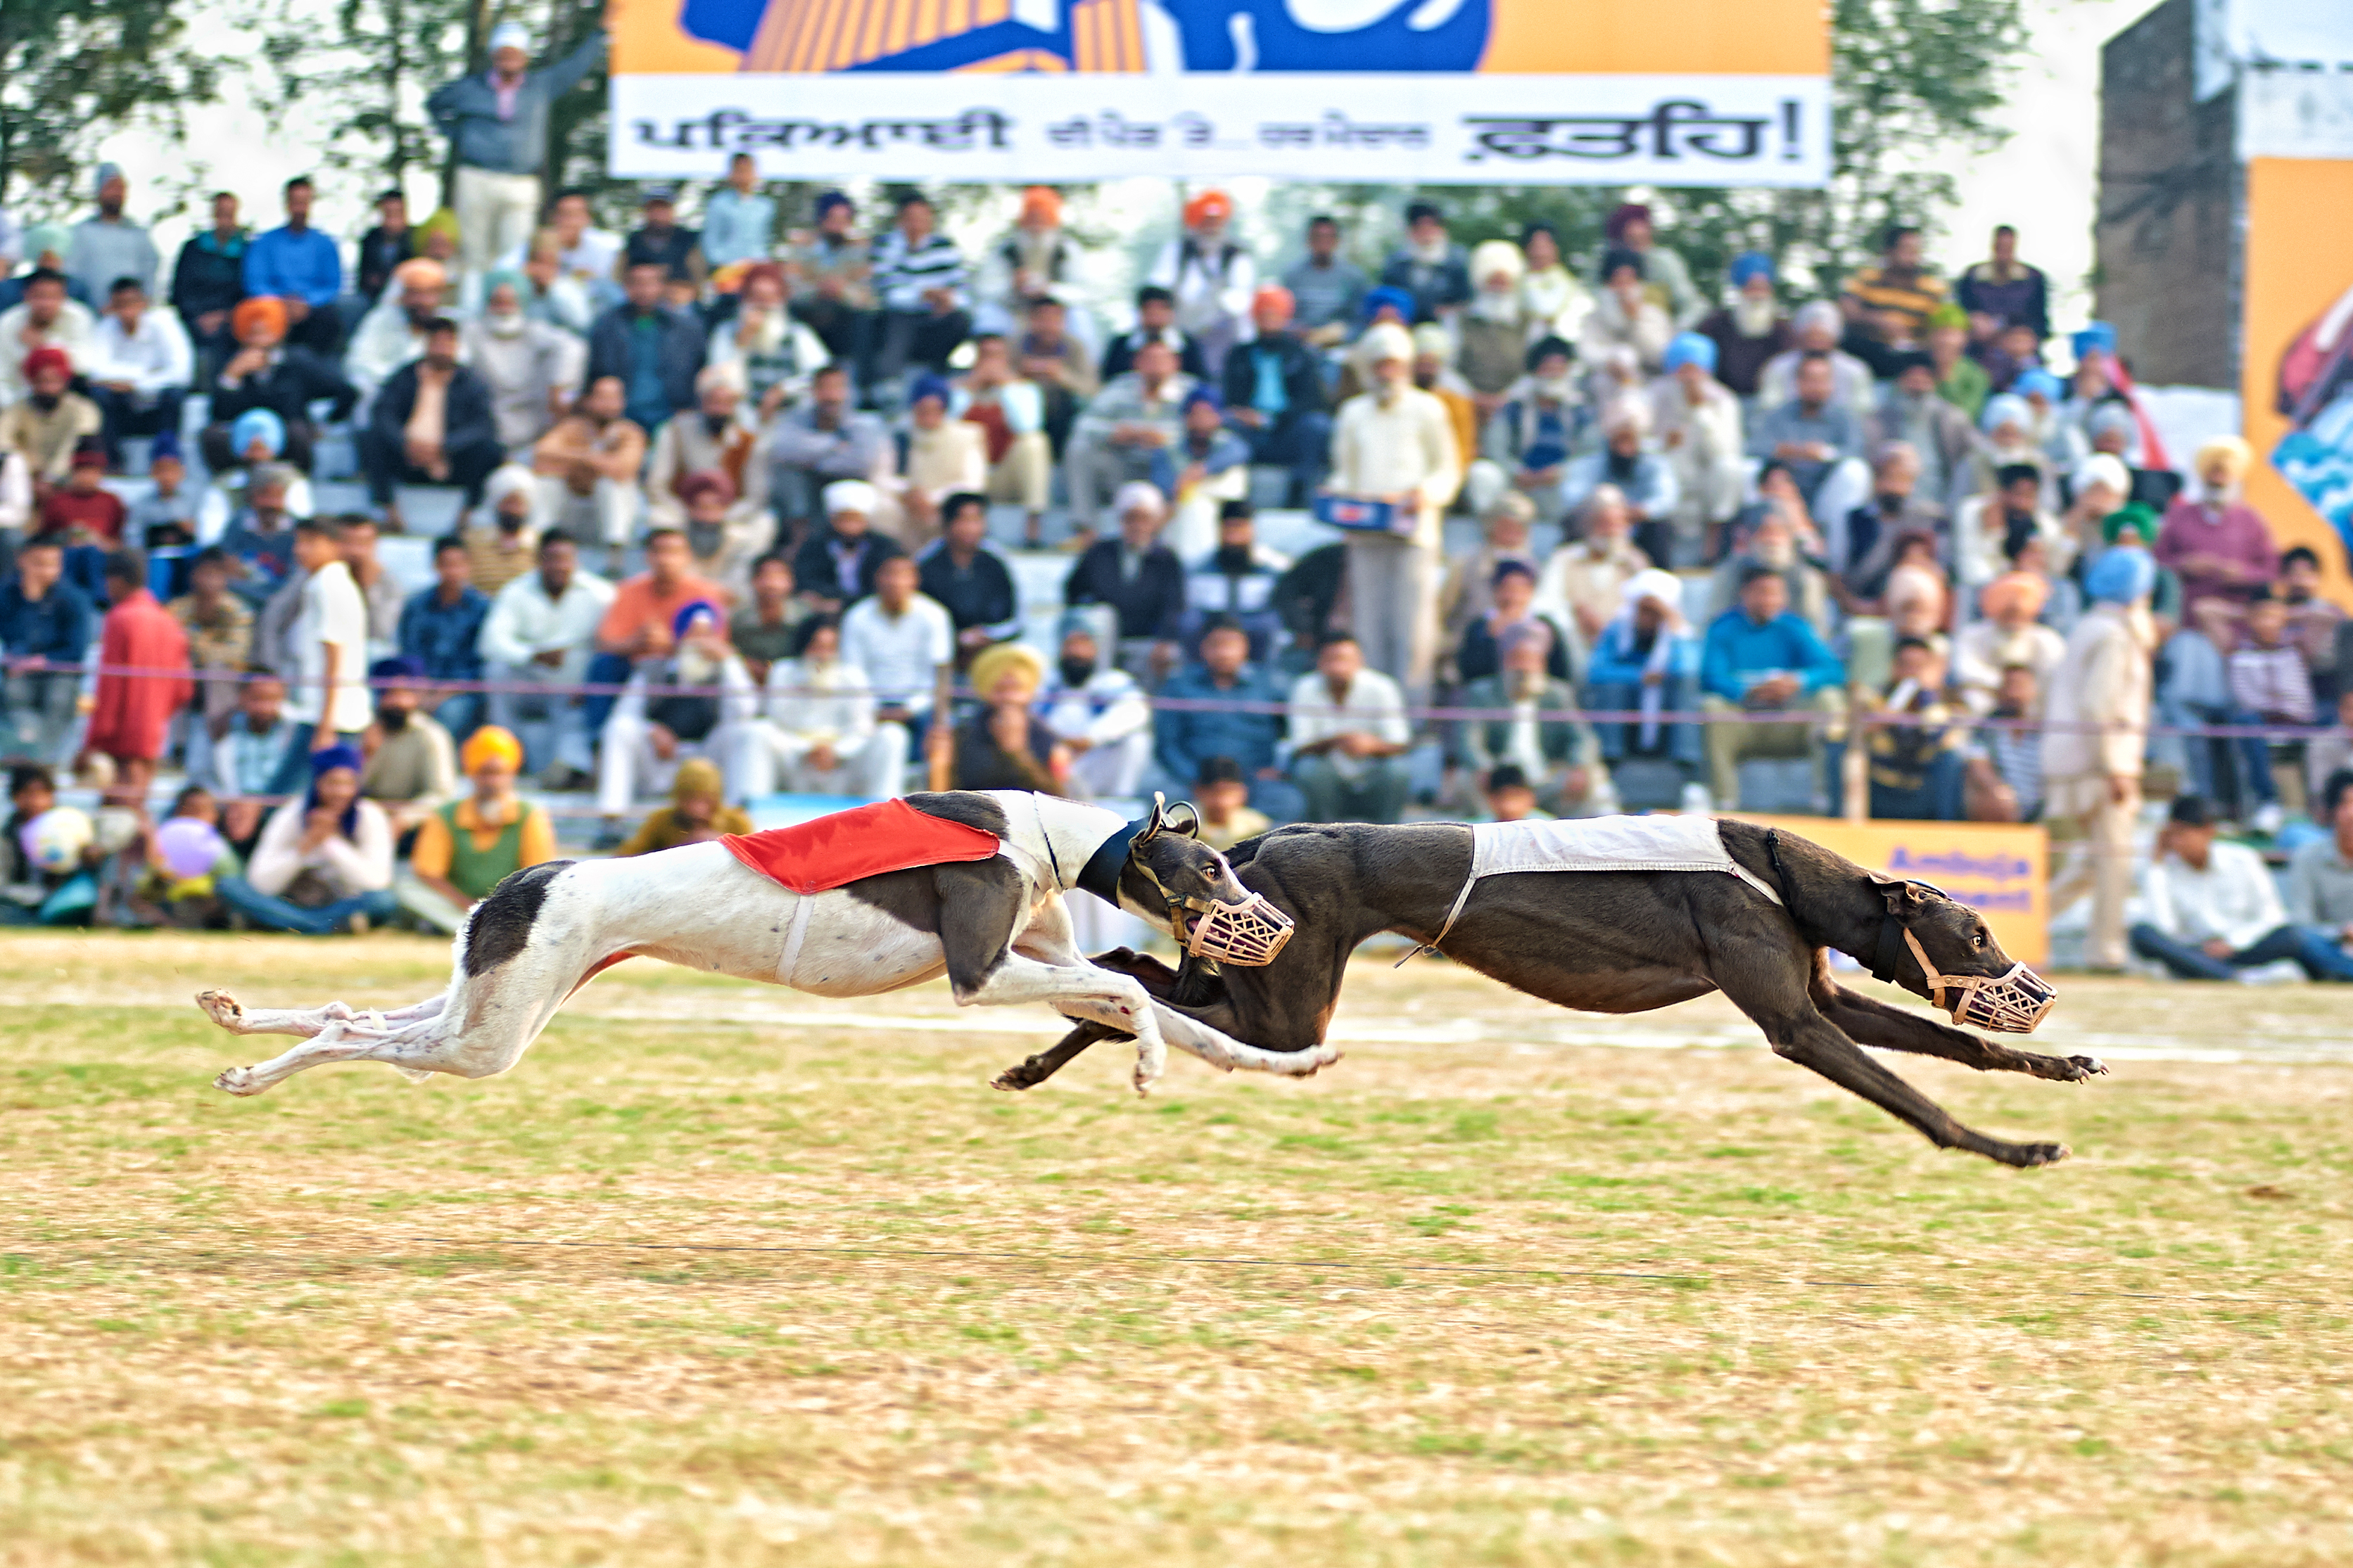 Kila Raipur Rural Sports, Ludhiana